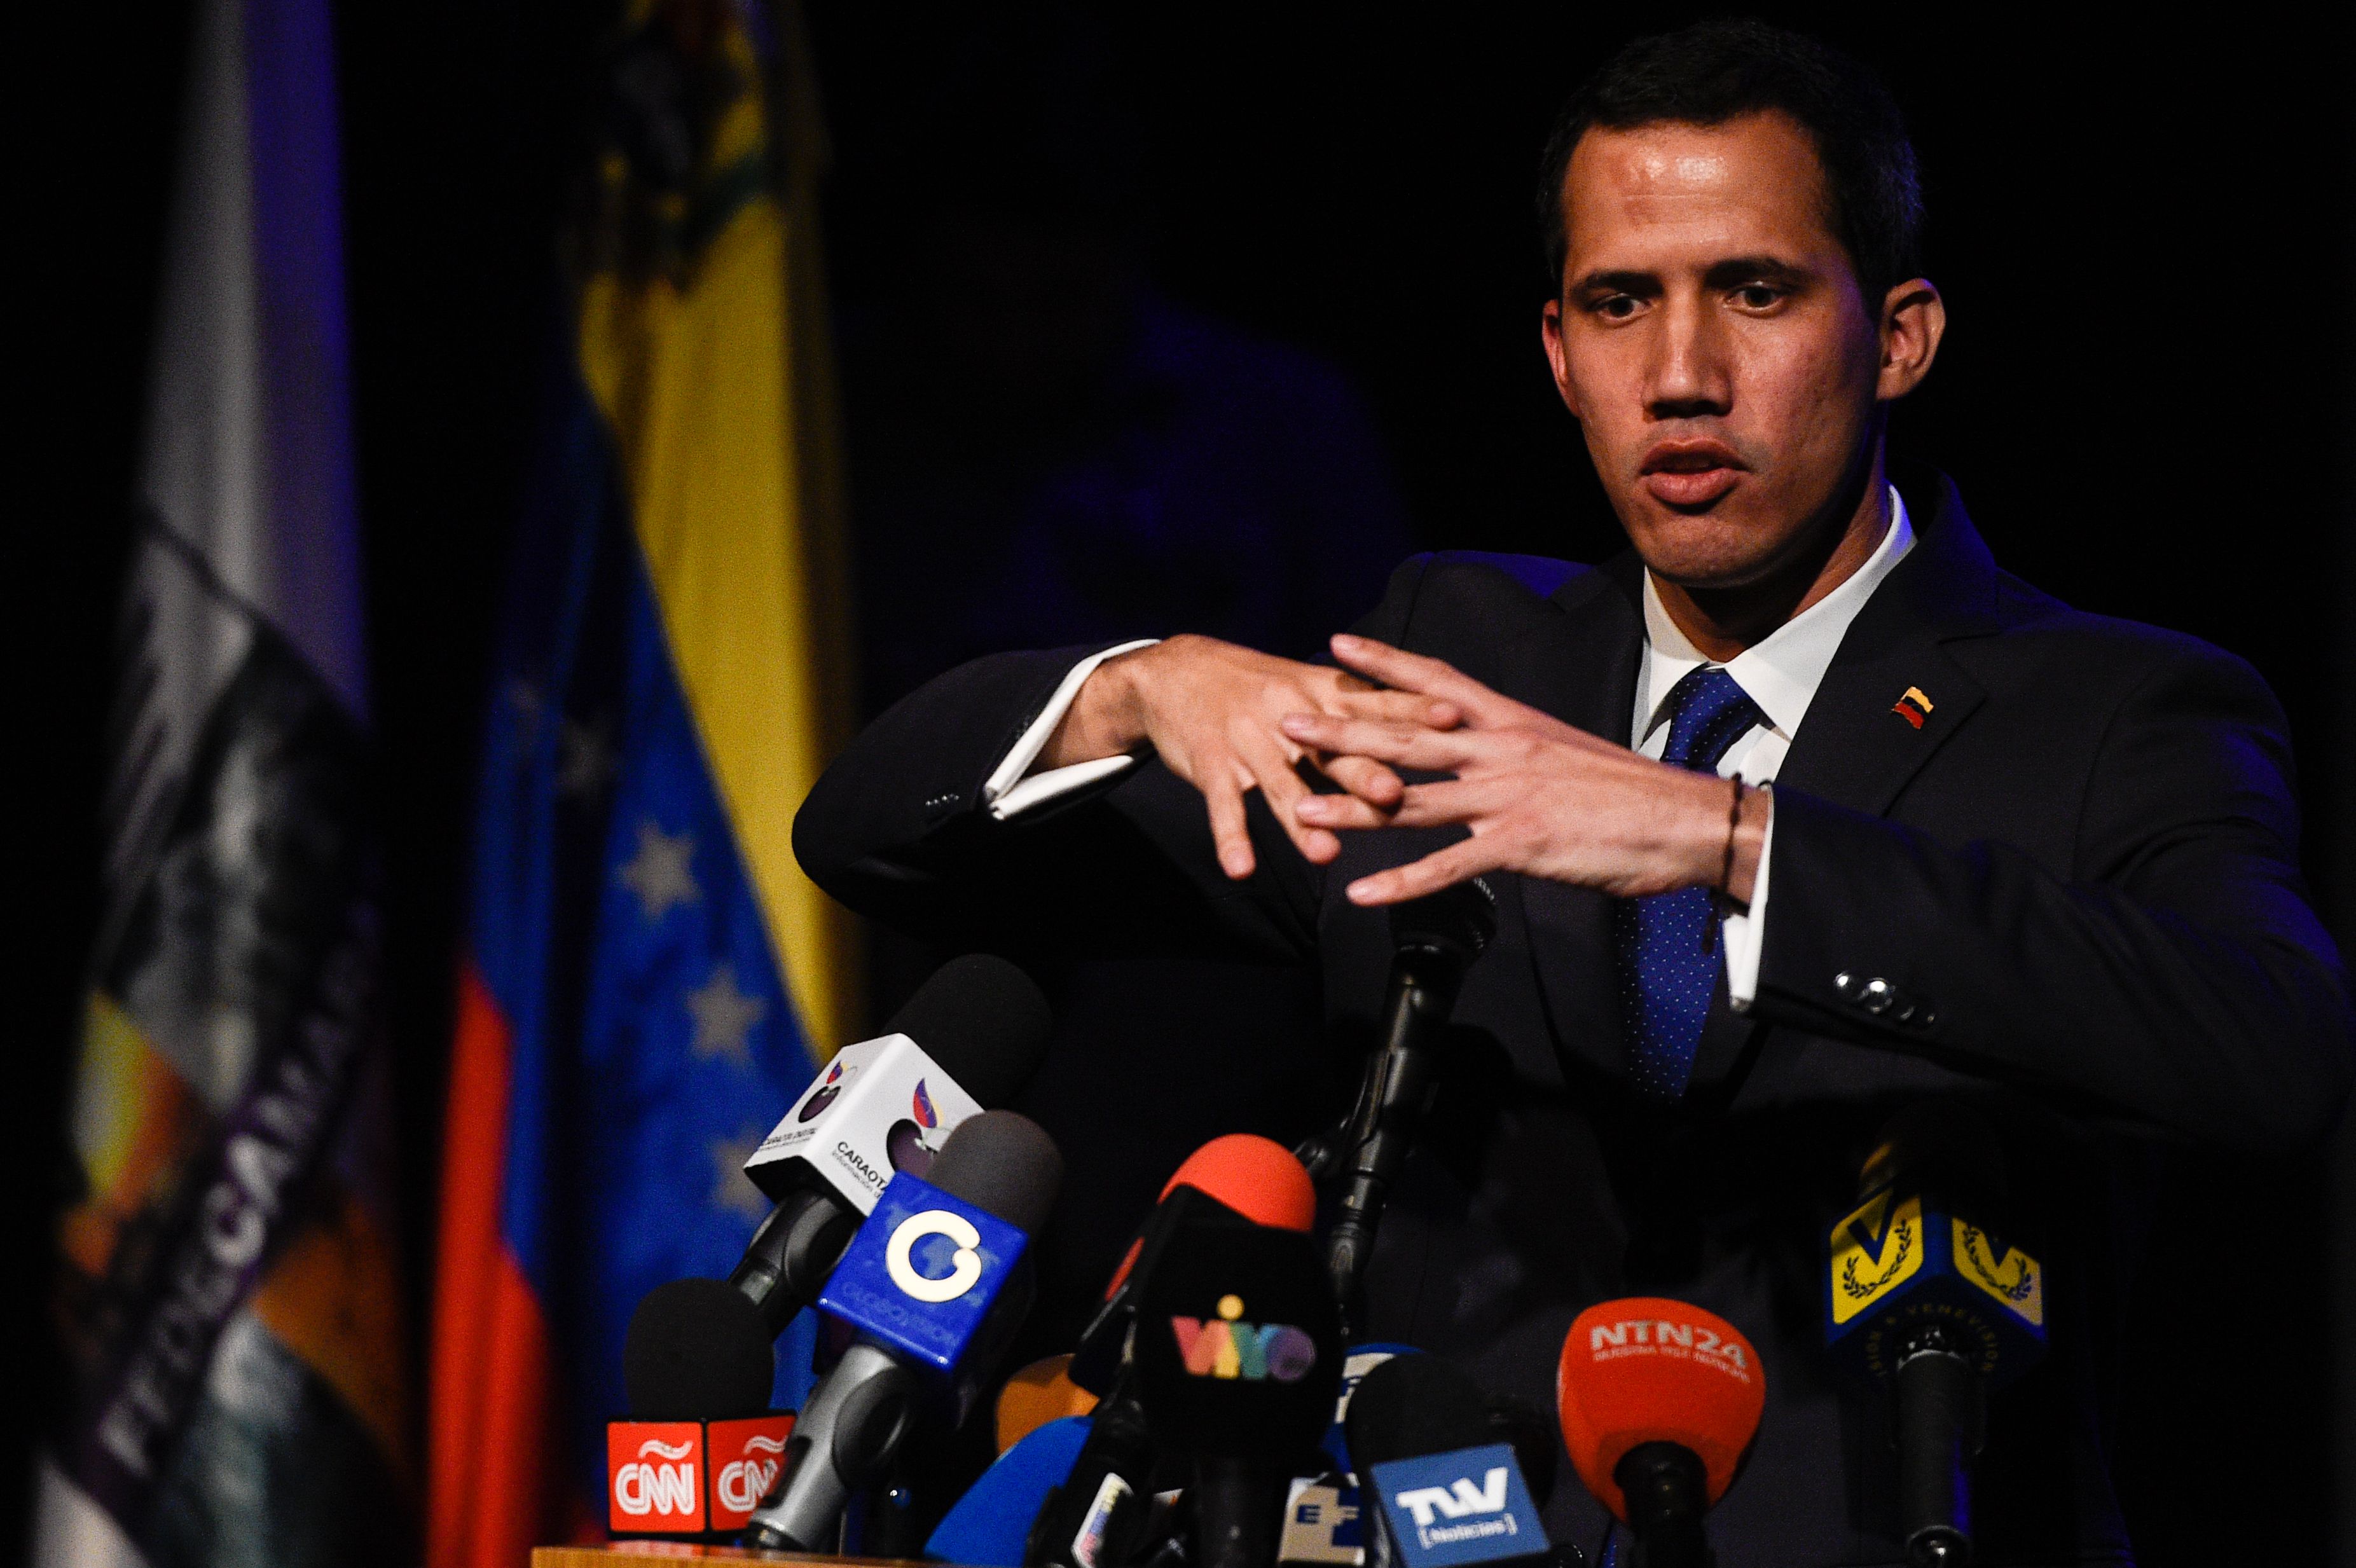 El opositor autoproclamado presidente de Venezuela está sustituyendo embajadores en los países que lo aceptan como mandatario. (Foto Prensa Libre: AFP)